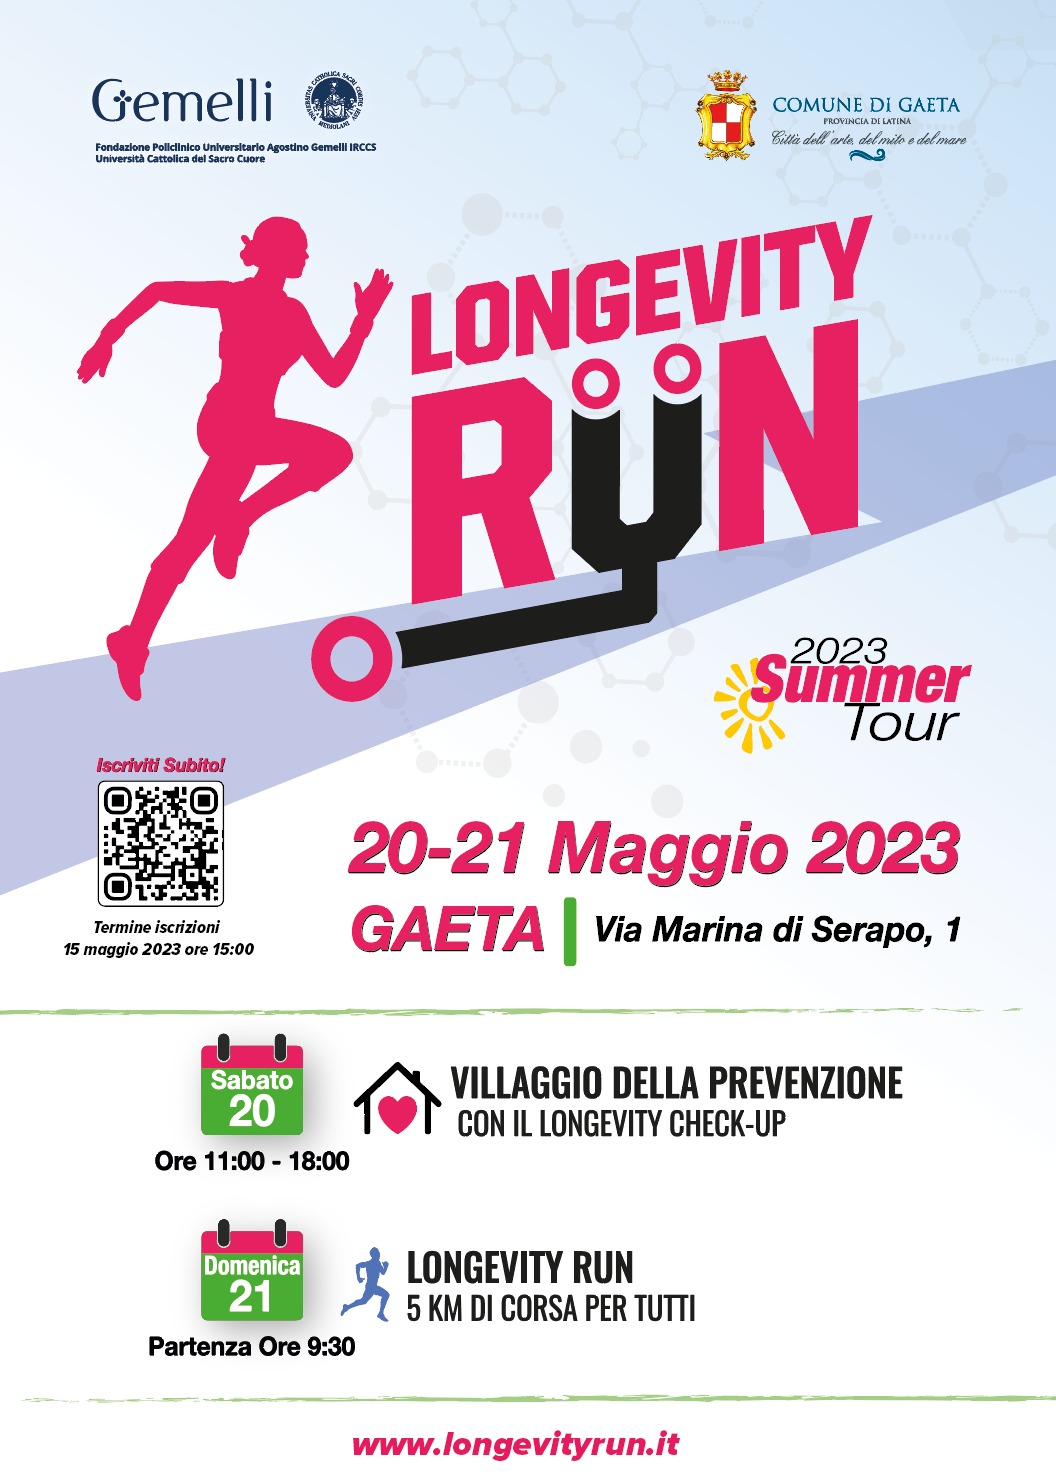 Longevità Run Summer Tour, prende il via da Gaeta il progetto realizzato dal Policlinico "Gemelli" che unisce sport e prevenzione